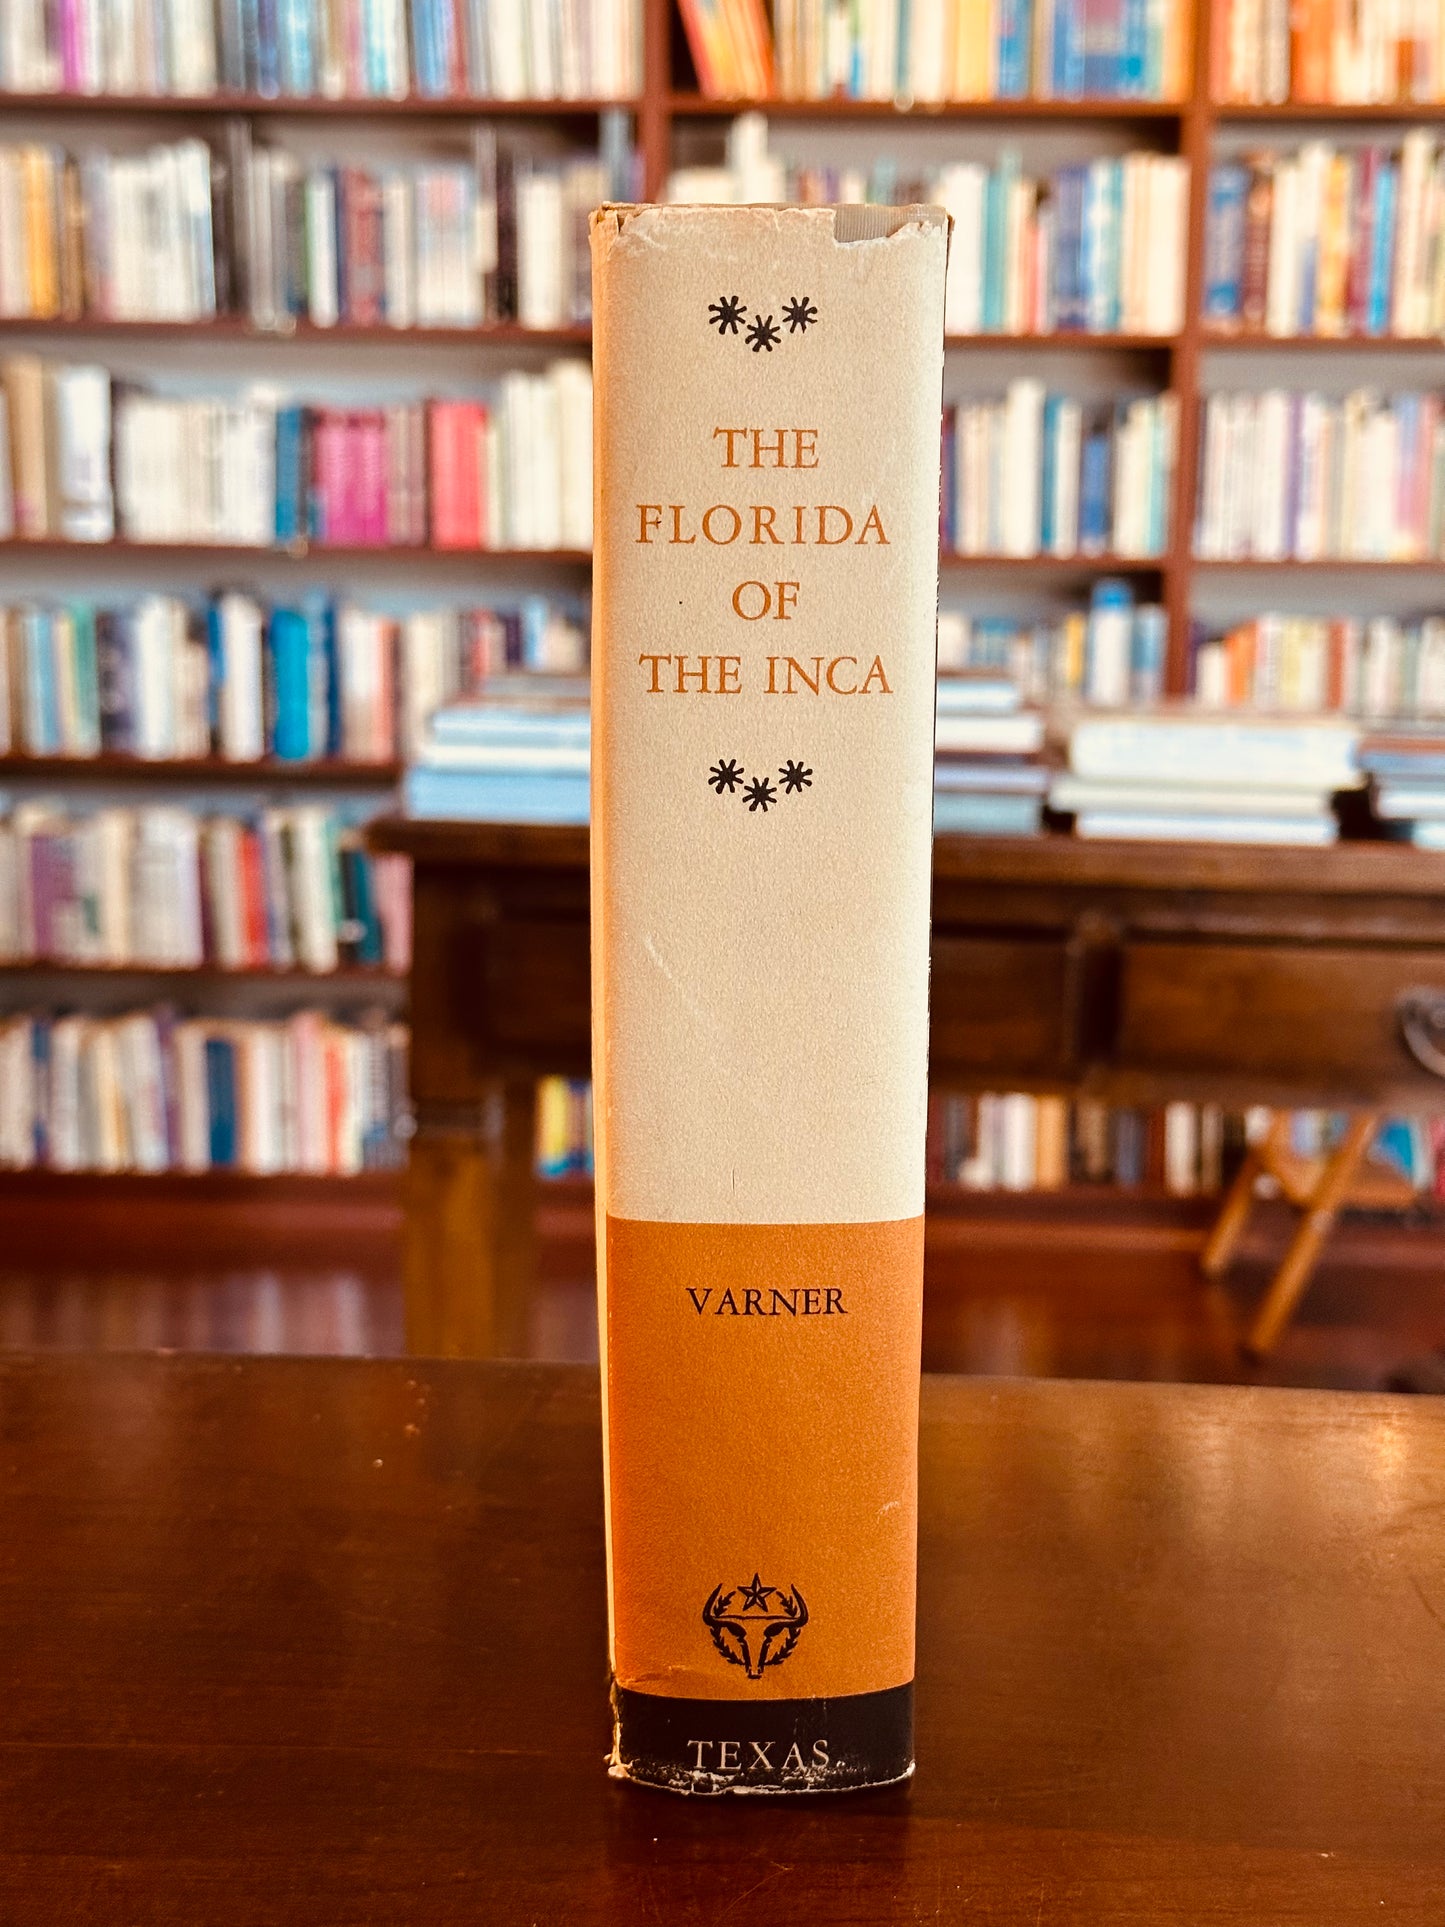 The Florida of The Inca by Garcilaso De La Vega